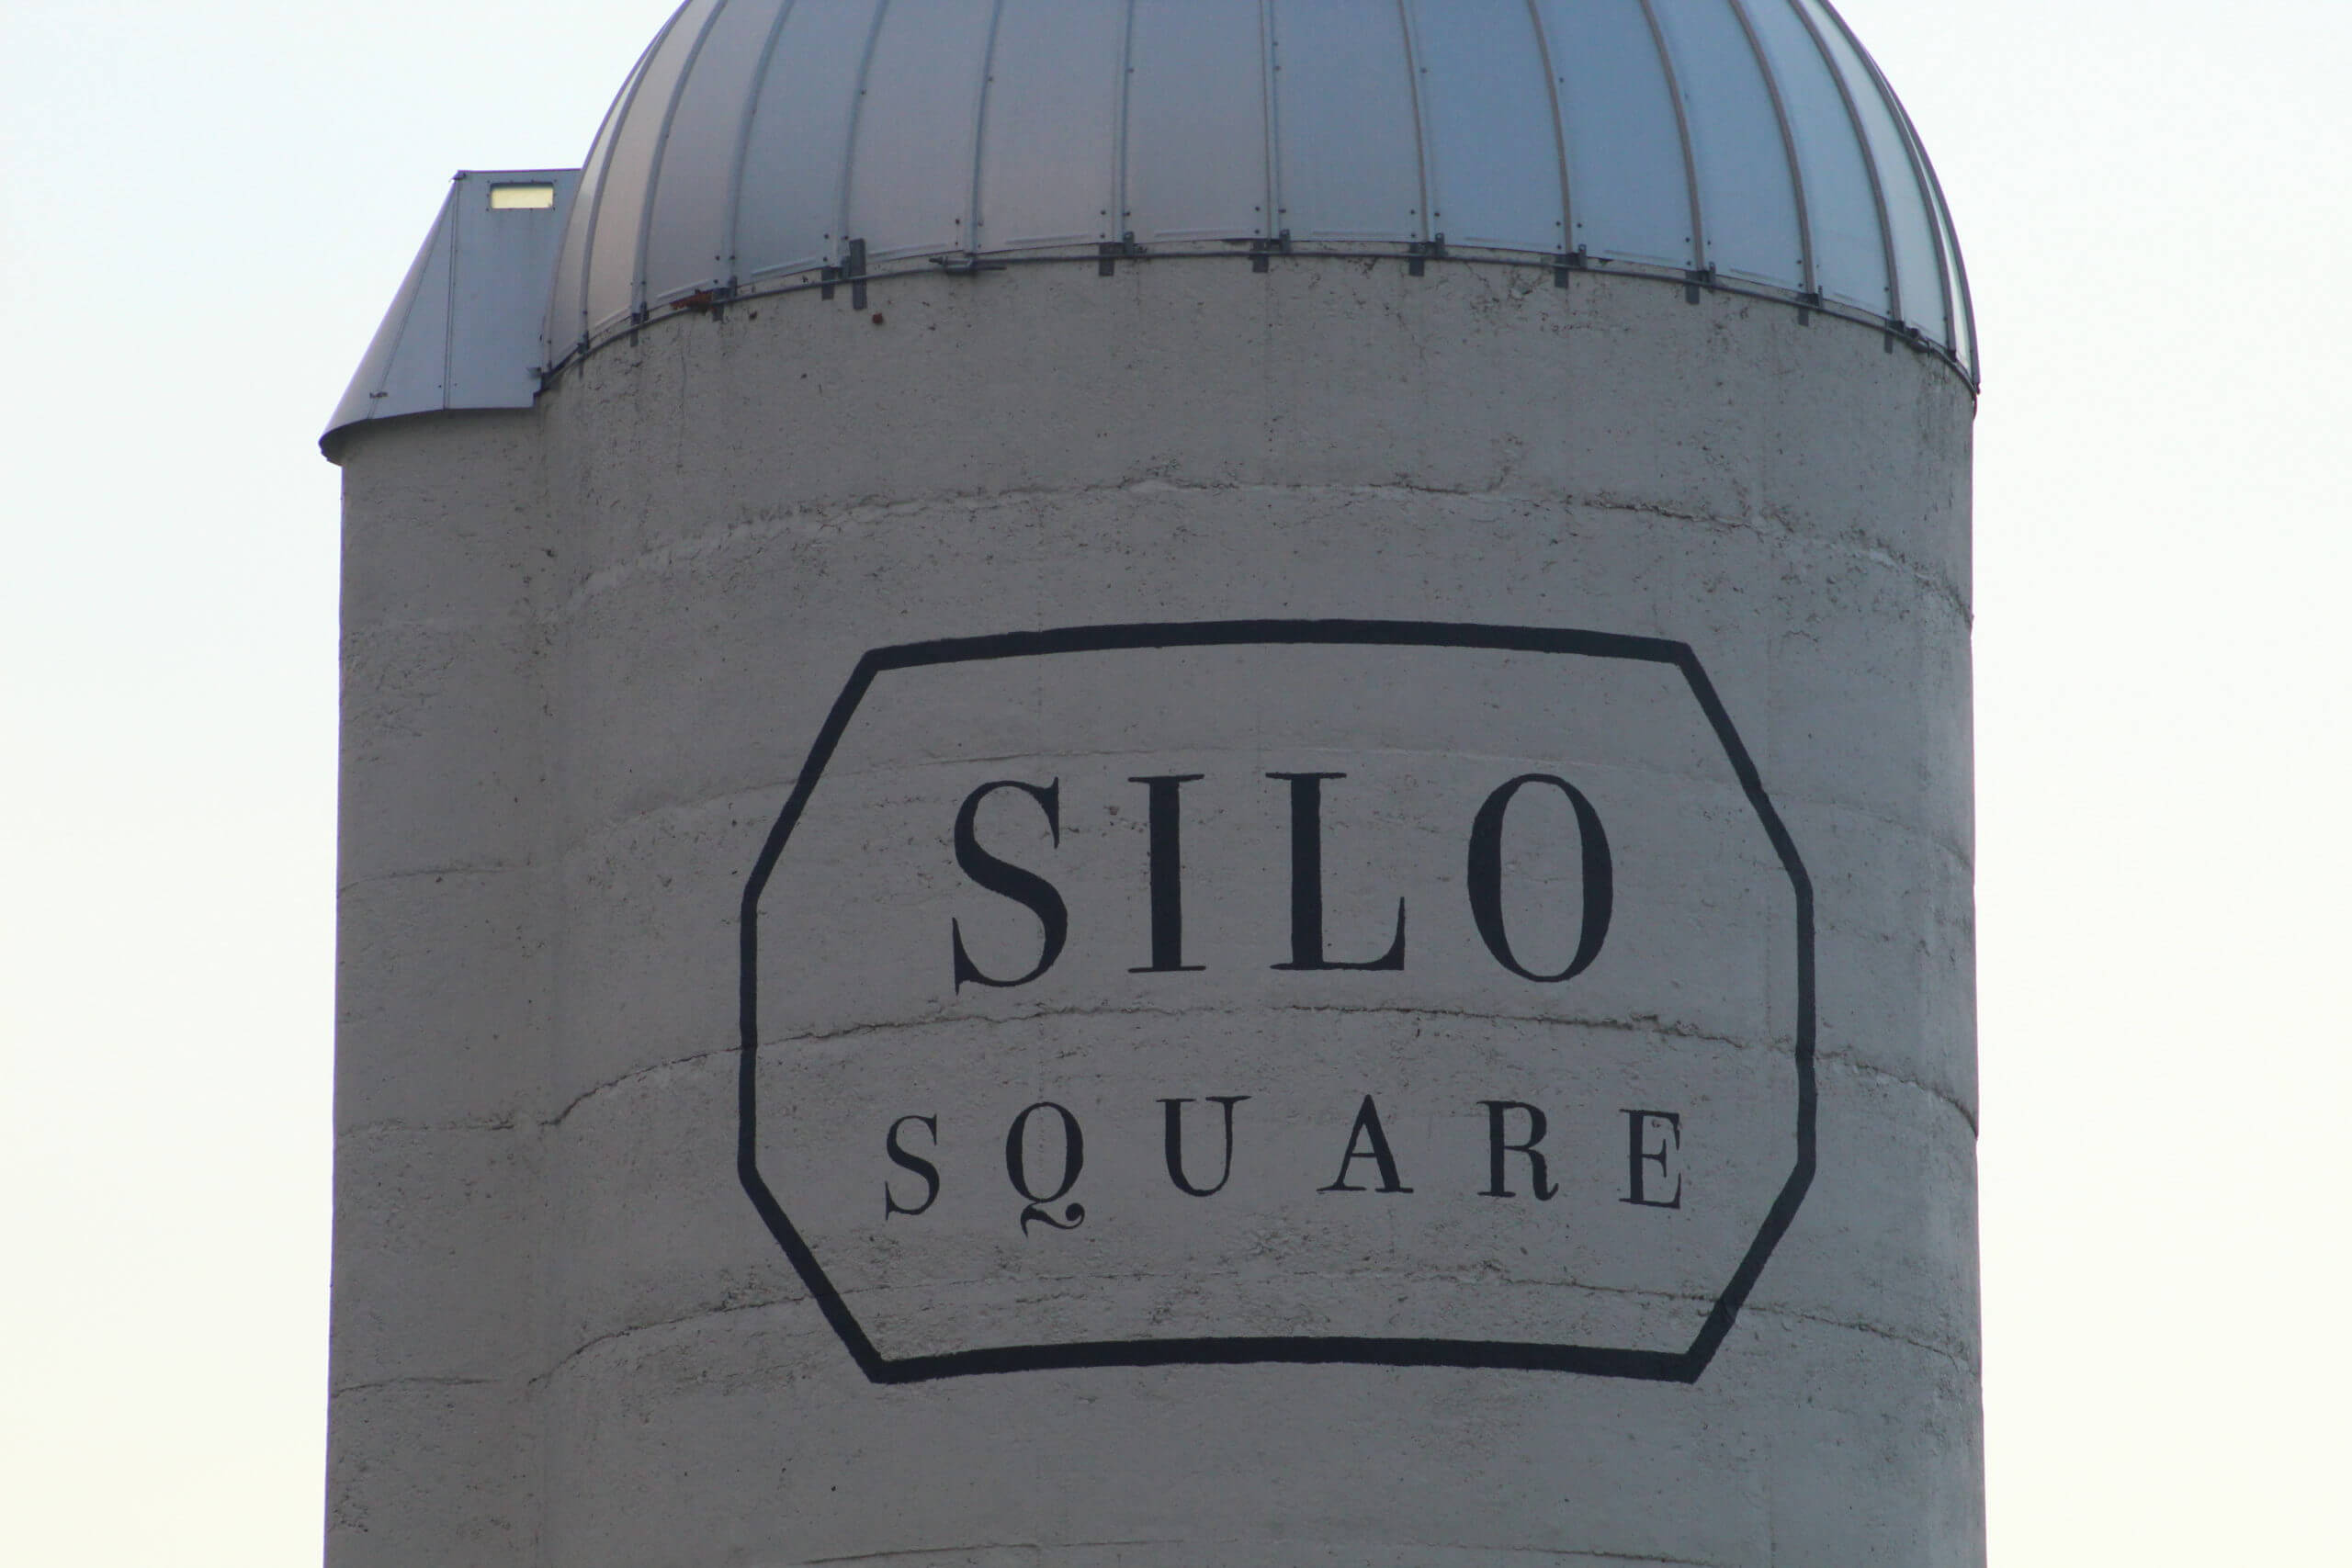 Silo Square additions receive aldermen approval